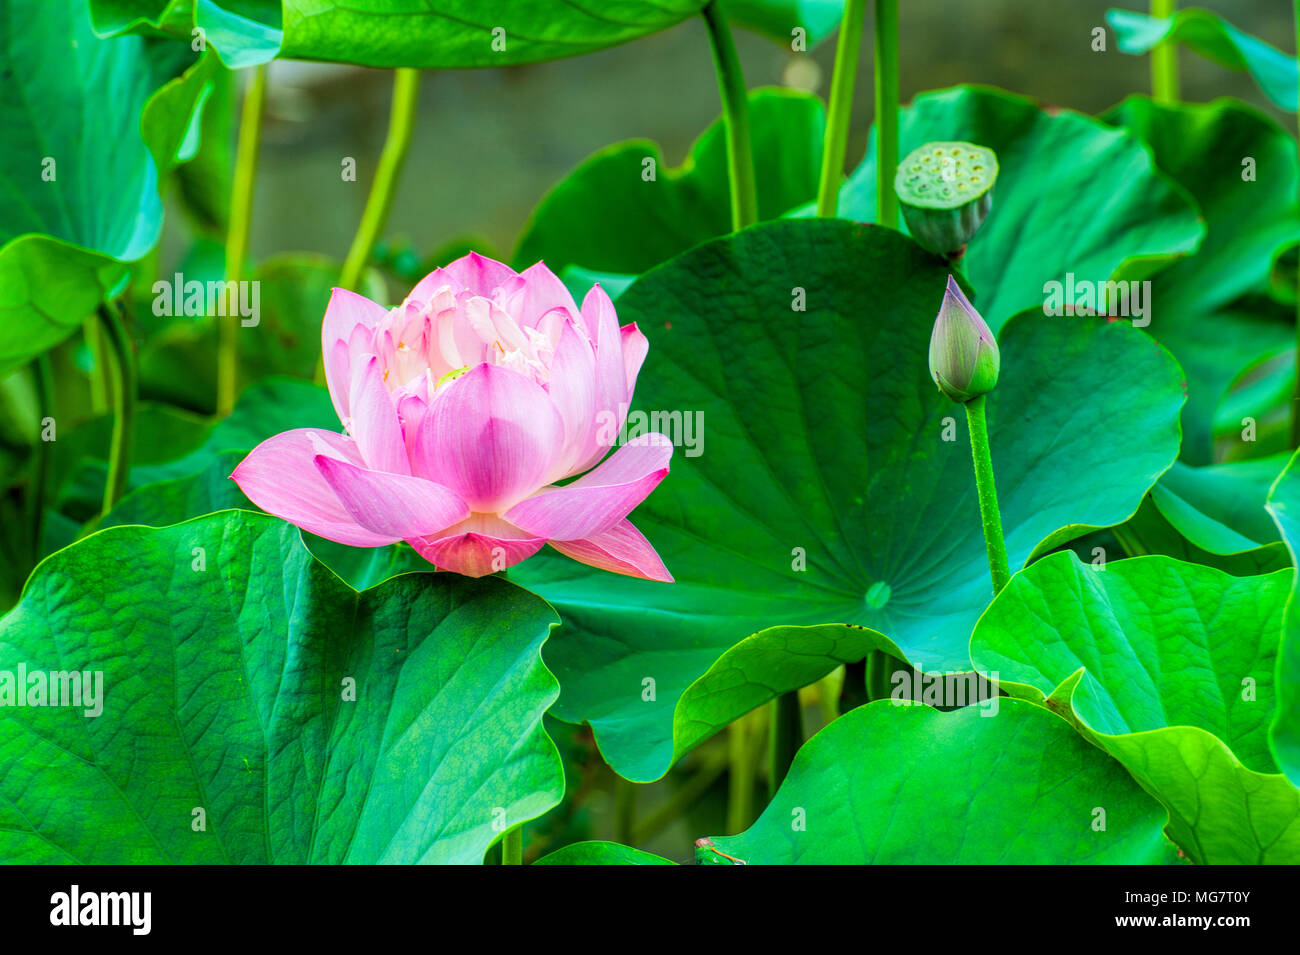 Nahaufnahme eines Pink Lotus Blume von großen grünen Lotus Blätter umgeben. Stockfoto